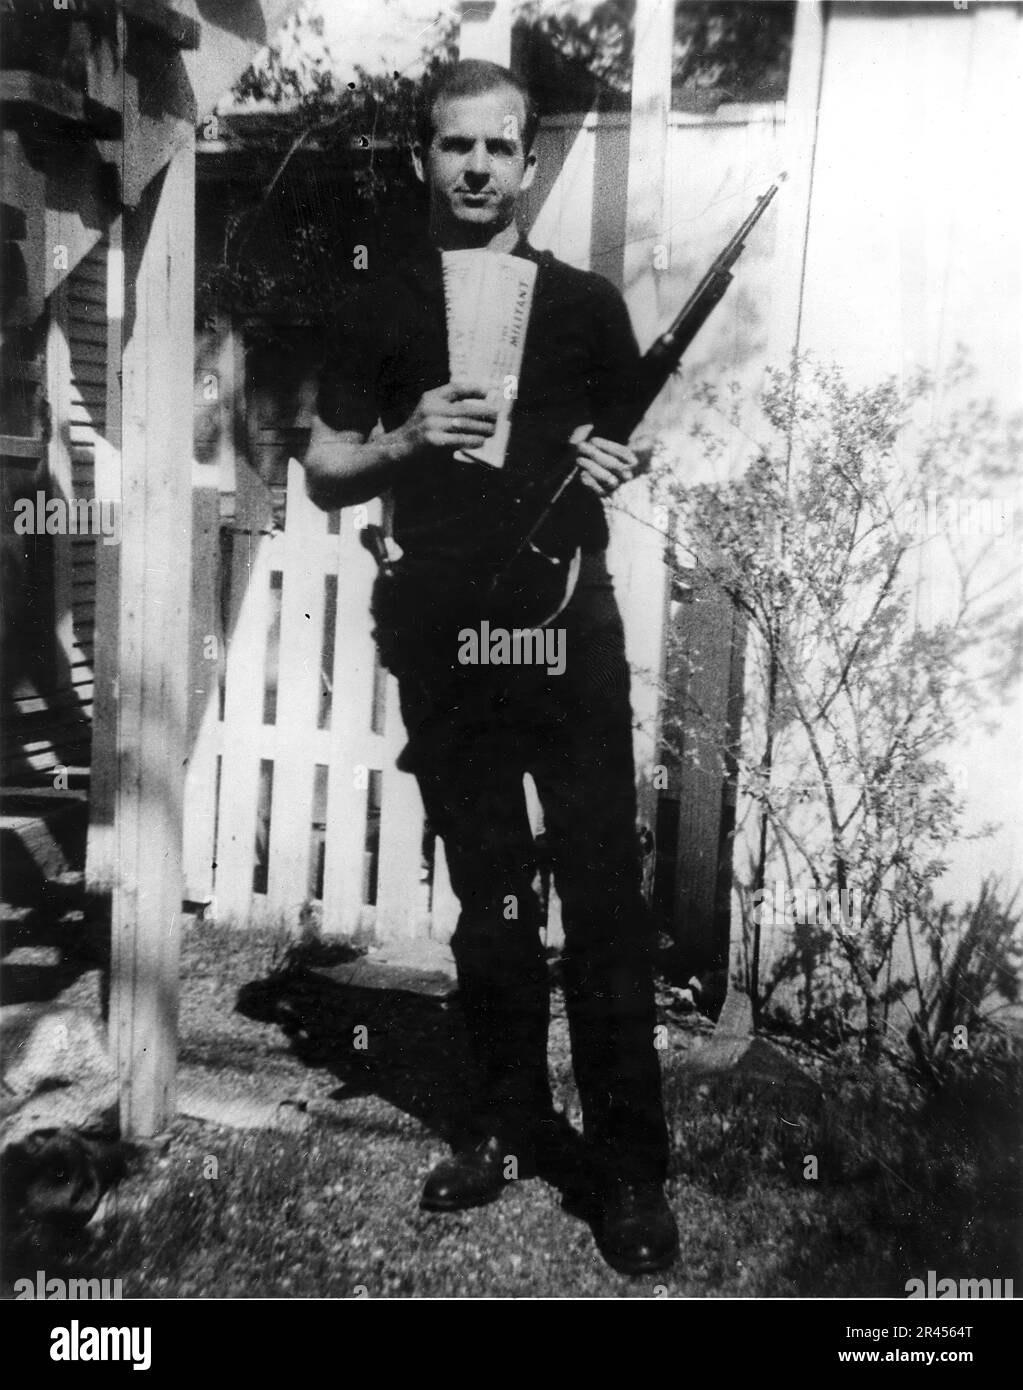 "Hinterhoffoto" von Lee Harvey Oswald, Attentäter der USA Präsident John F. Kennedy hält zwei marxistische Zeitungen, den Militanten und den Arbeiter, und ein Carcano-Gewehr, mit den Markierungen auf dem Gewehr, das nach dem Attentat im Buchlager gefunden wurde. Stockfoto